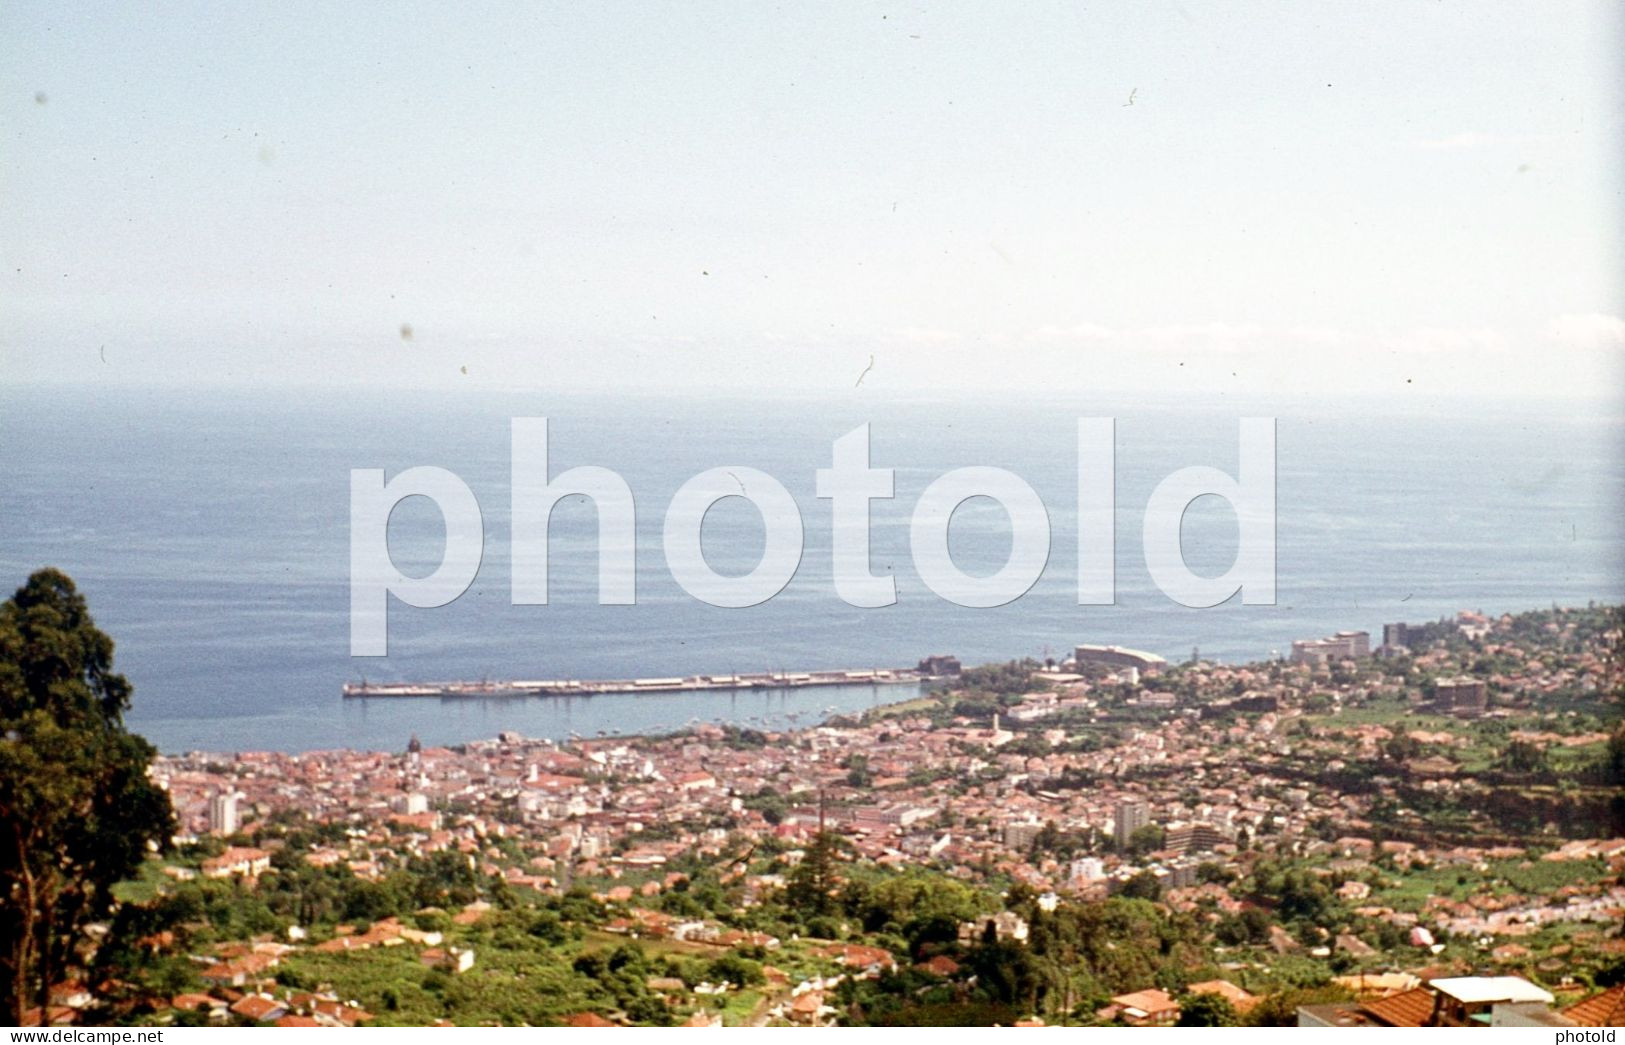 8 SLIDES SET 1970s FUNCHAL MADEIRA PORTUGAL AMATEUR 35mm SLIDE Not PHOTO No FOTO NB3965 - Diapositives (slides)